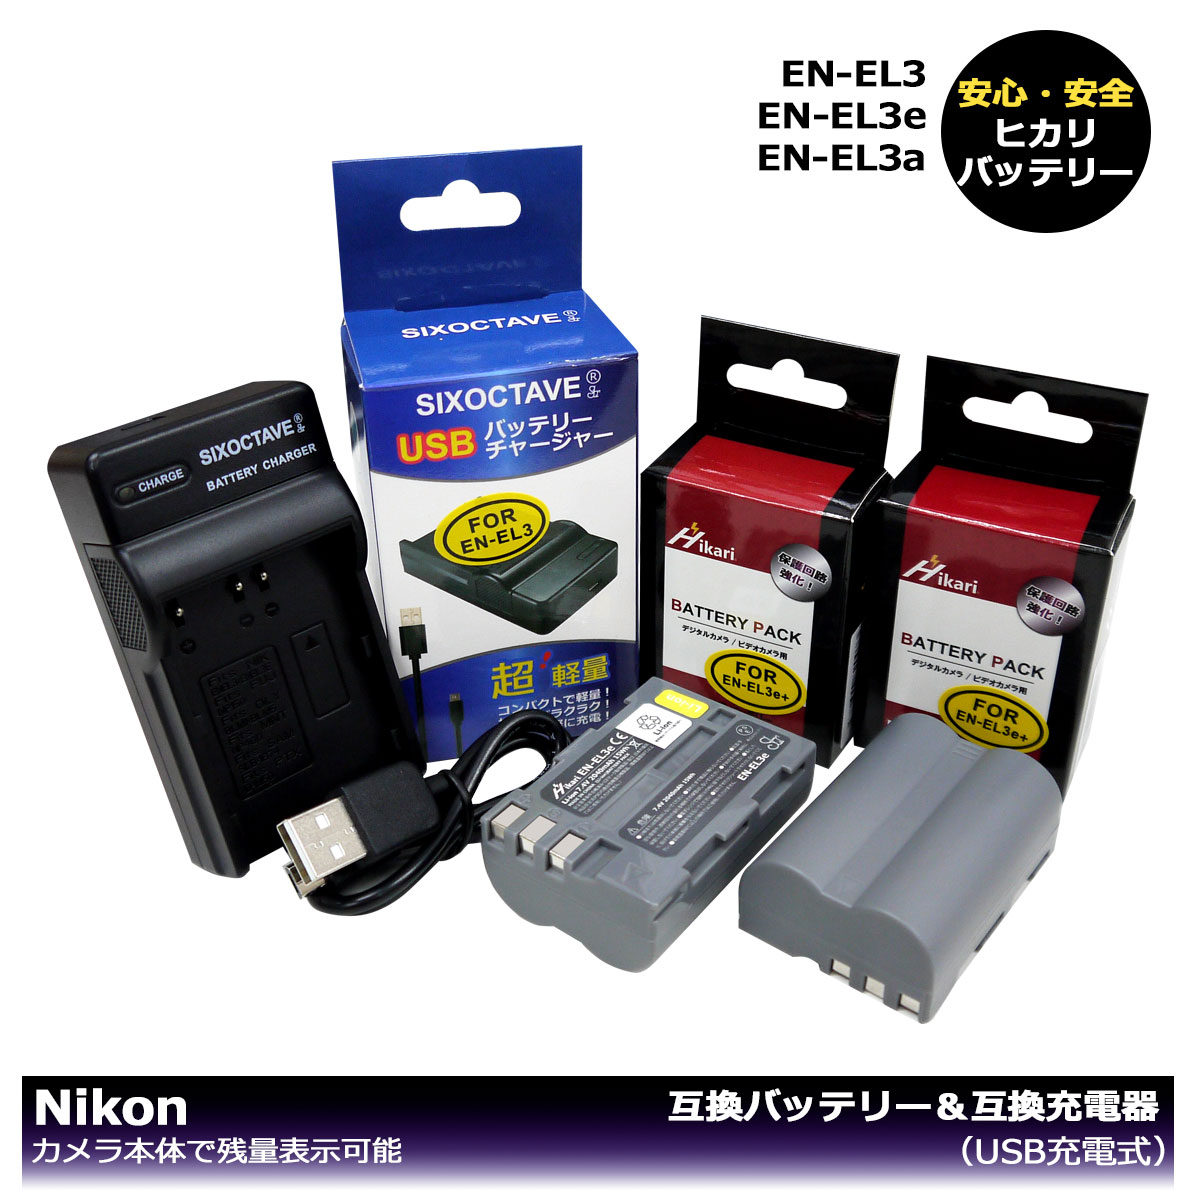 あす楽対応 EN-EL3e 送料無料【大容量シリーズ】ニコン 互換バッテリー 2個と 互換充電器 1個の3点セット D100 D100LS D200 D300 D300s D50 D70 D700 D70s D80 D90 カメラ本体で残量表示可能。